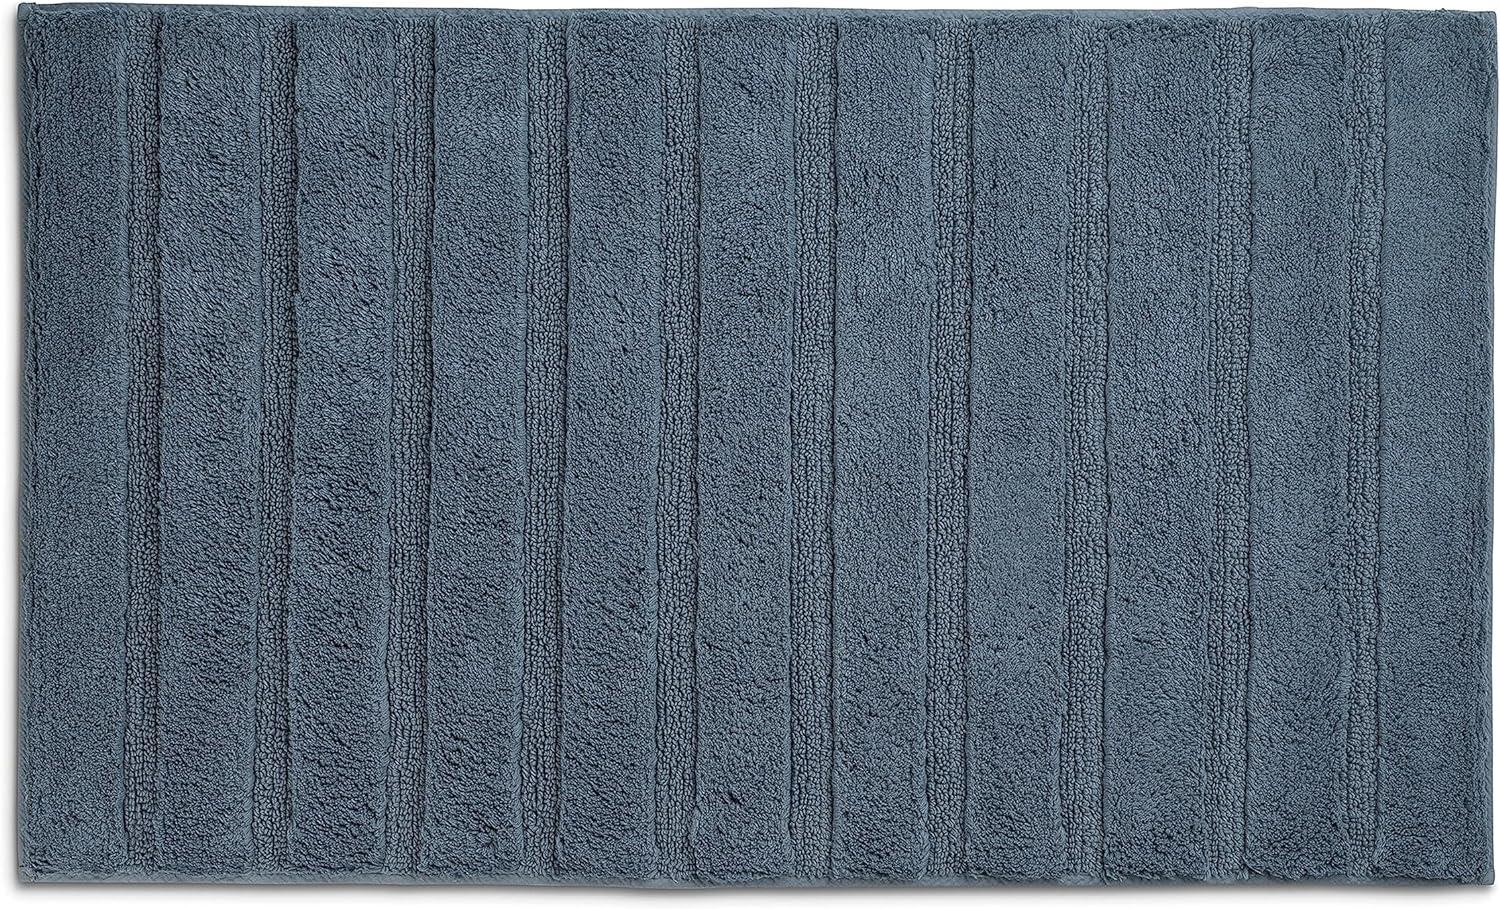 Kela Badematte Megan, 100 cm x 60 cm, 100% Baumwolle, Rauchblau, rutschhemmend, waschbar bis 30° C, geeignet für Fußbodenheizung, 24702 Bild 1